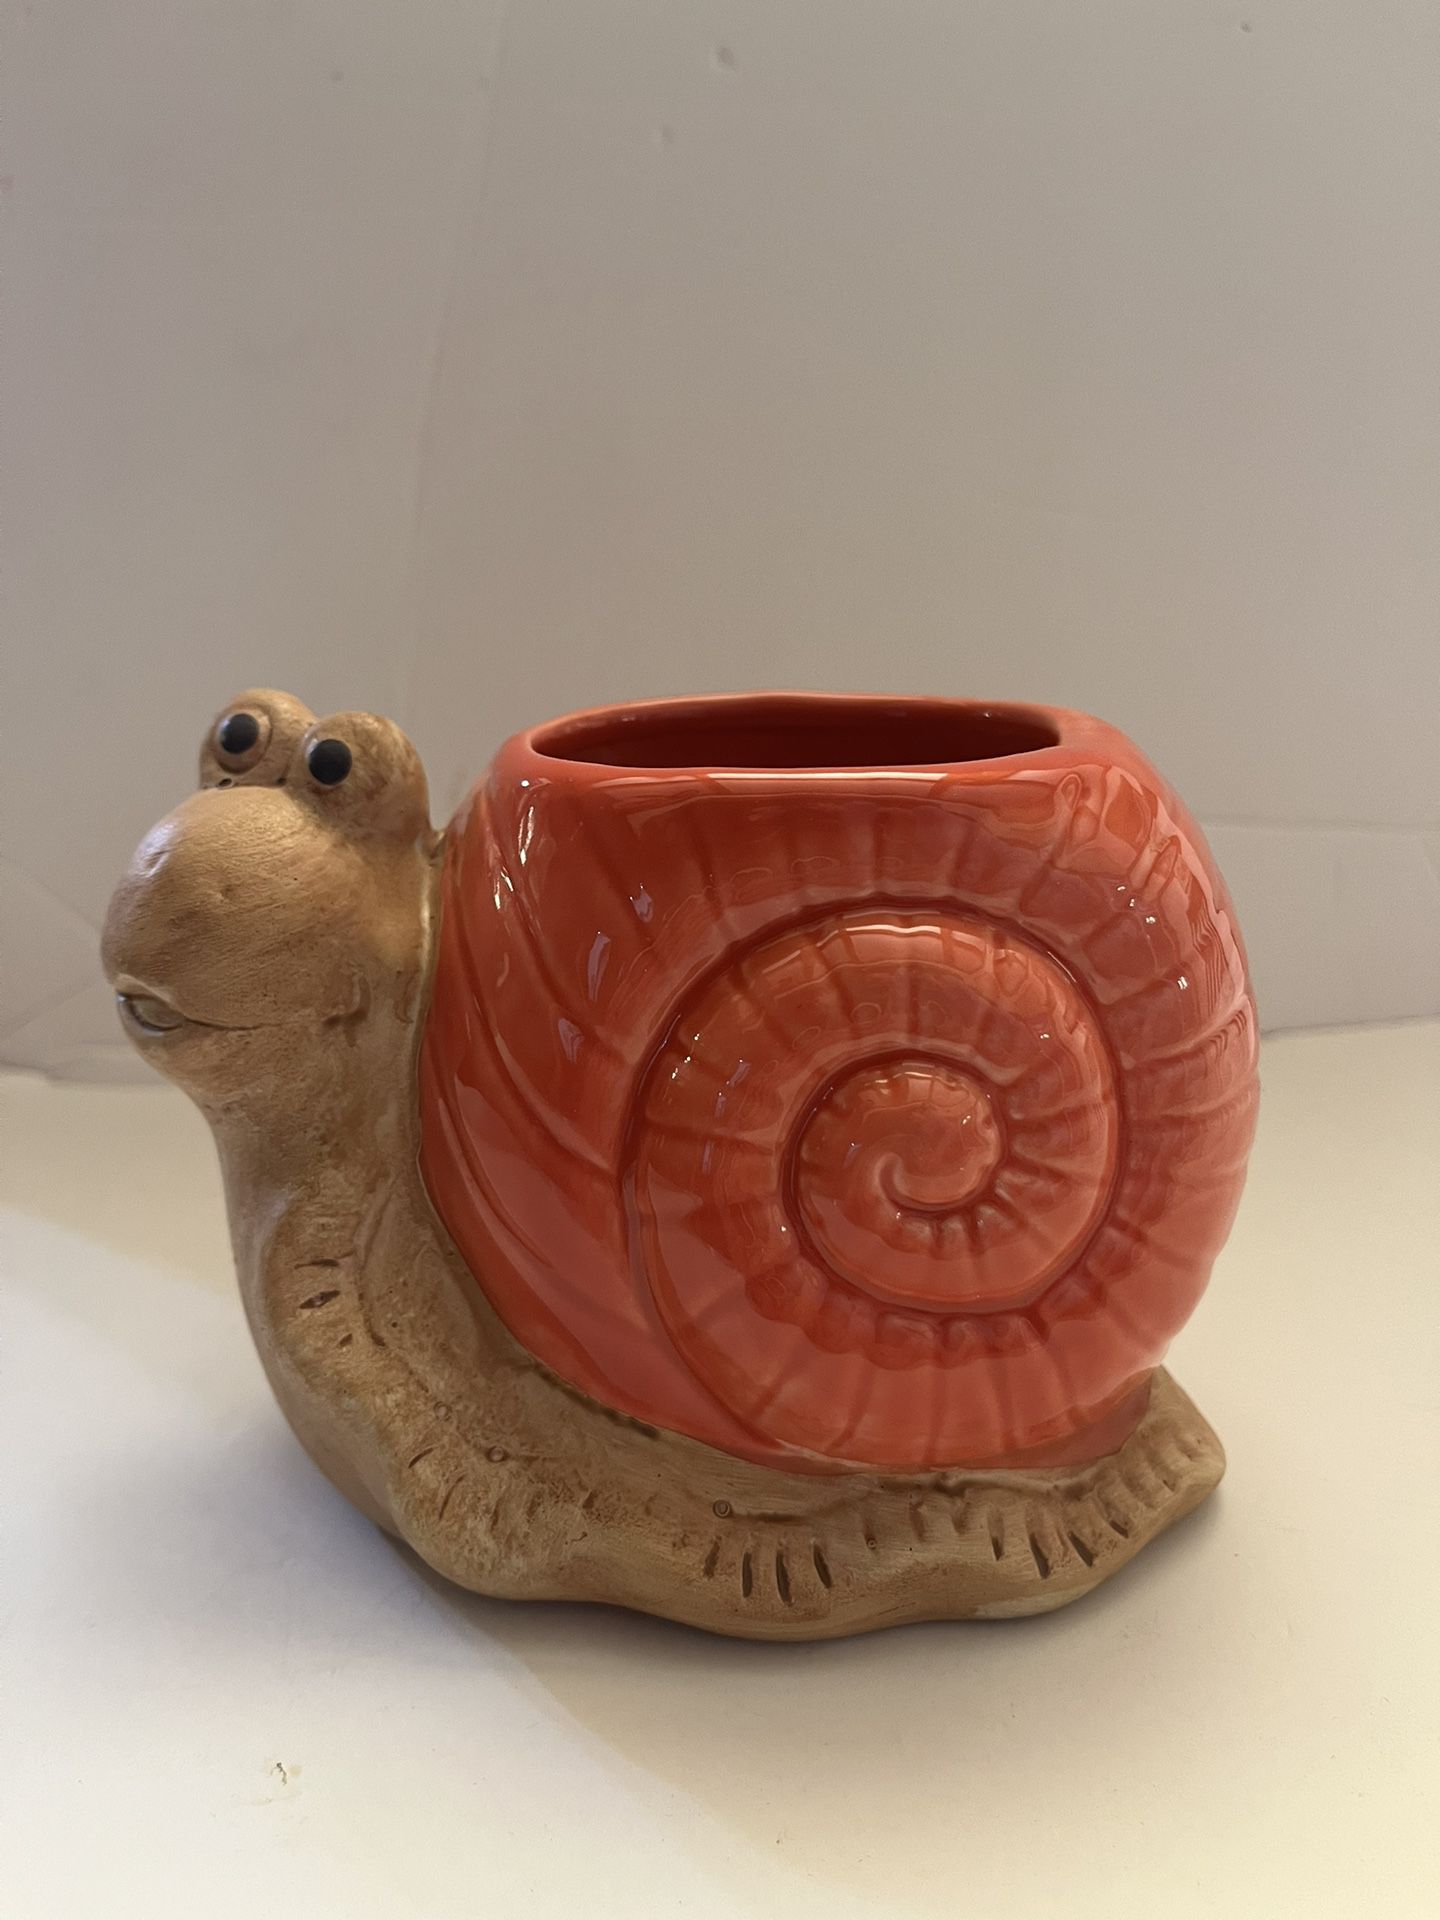 Cute animal ceramic pot for succulents